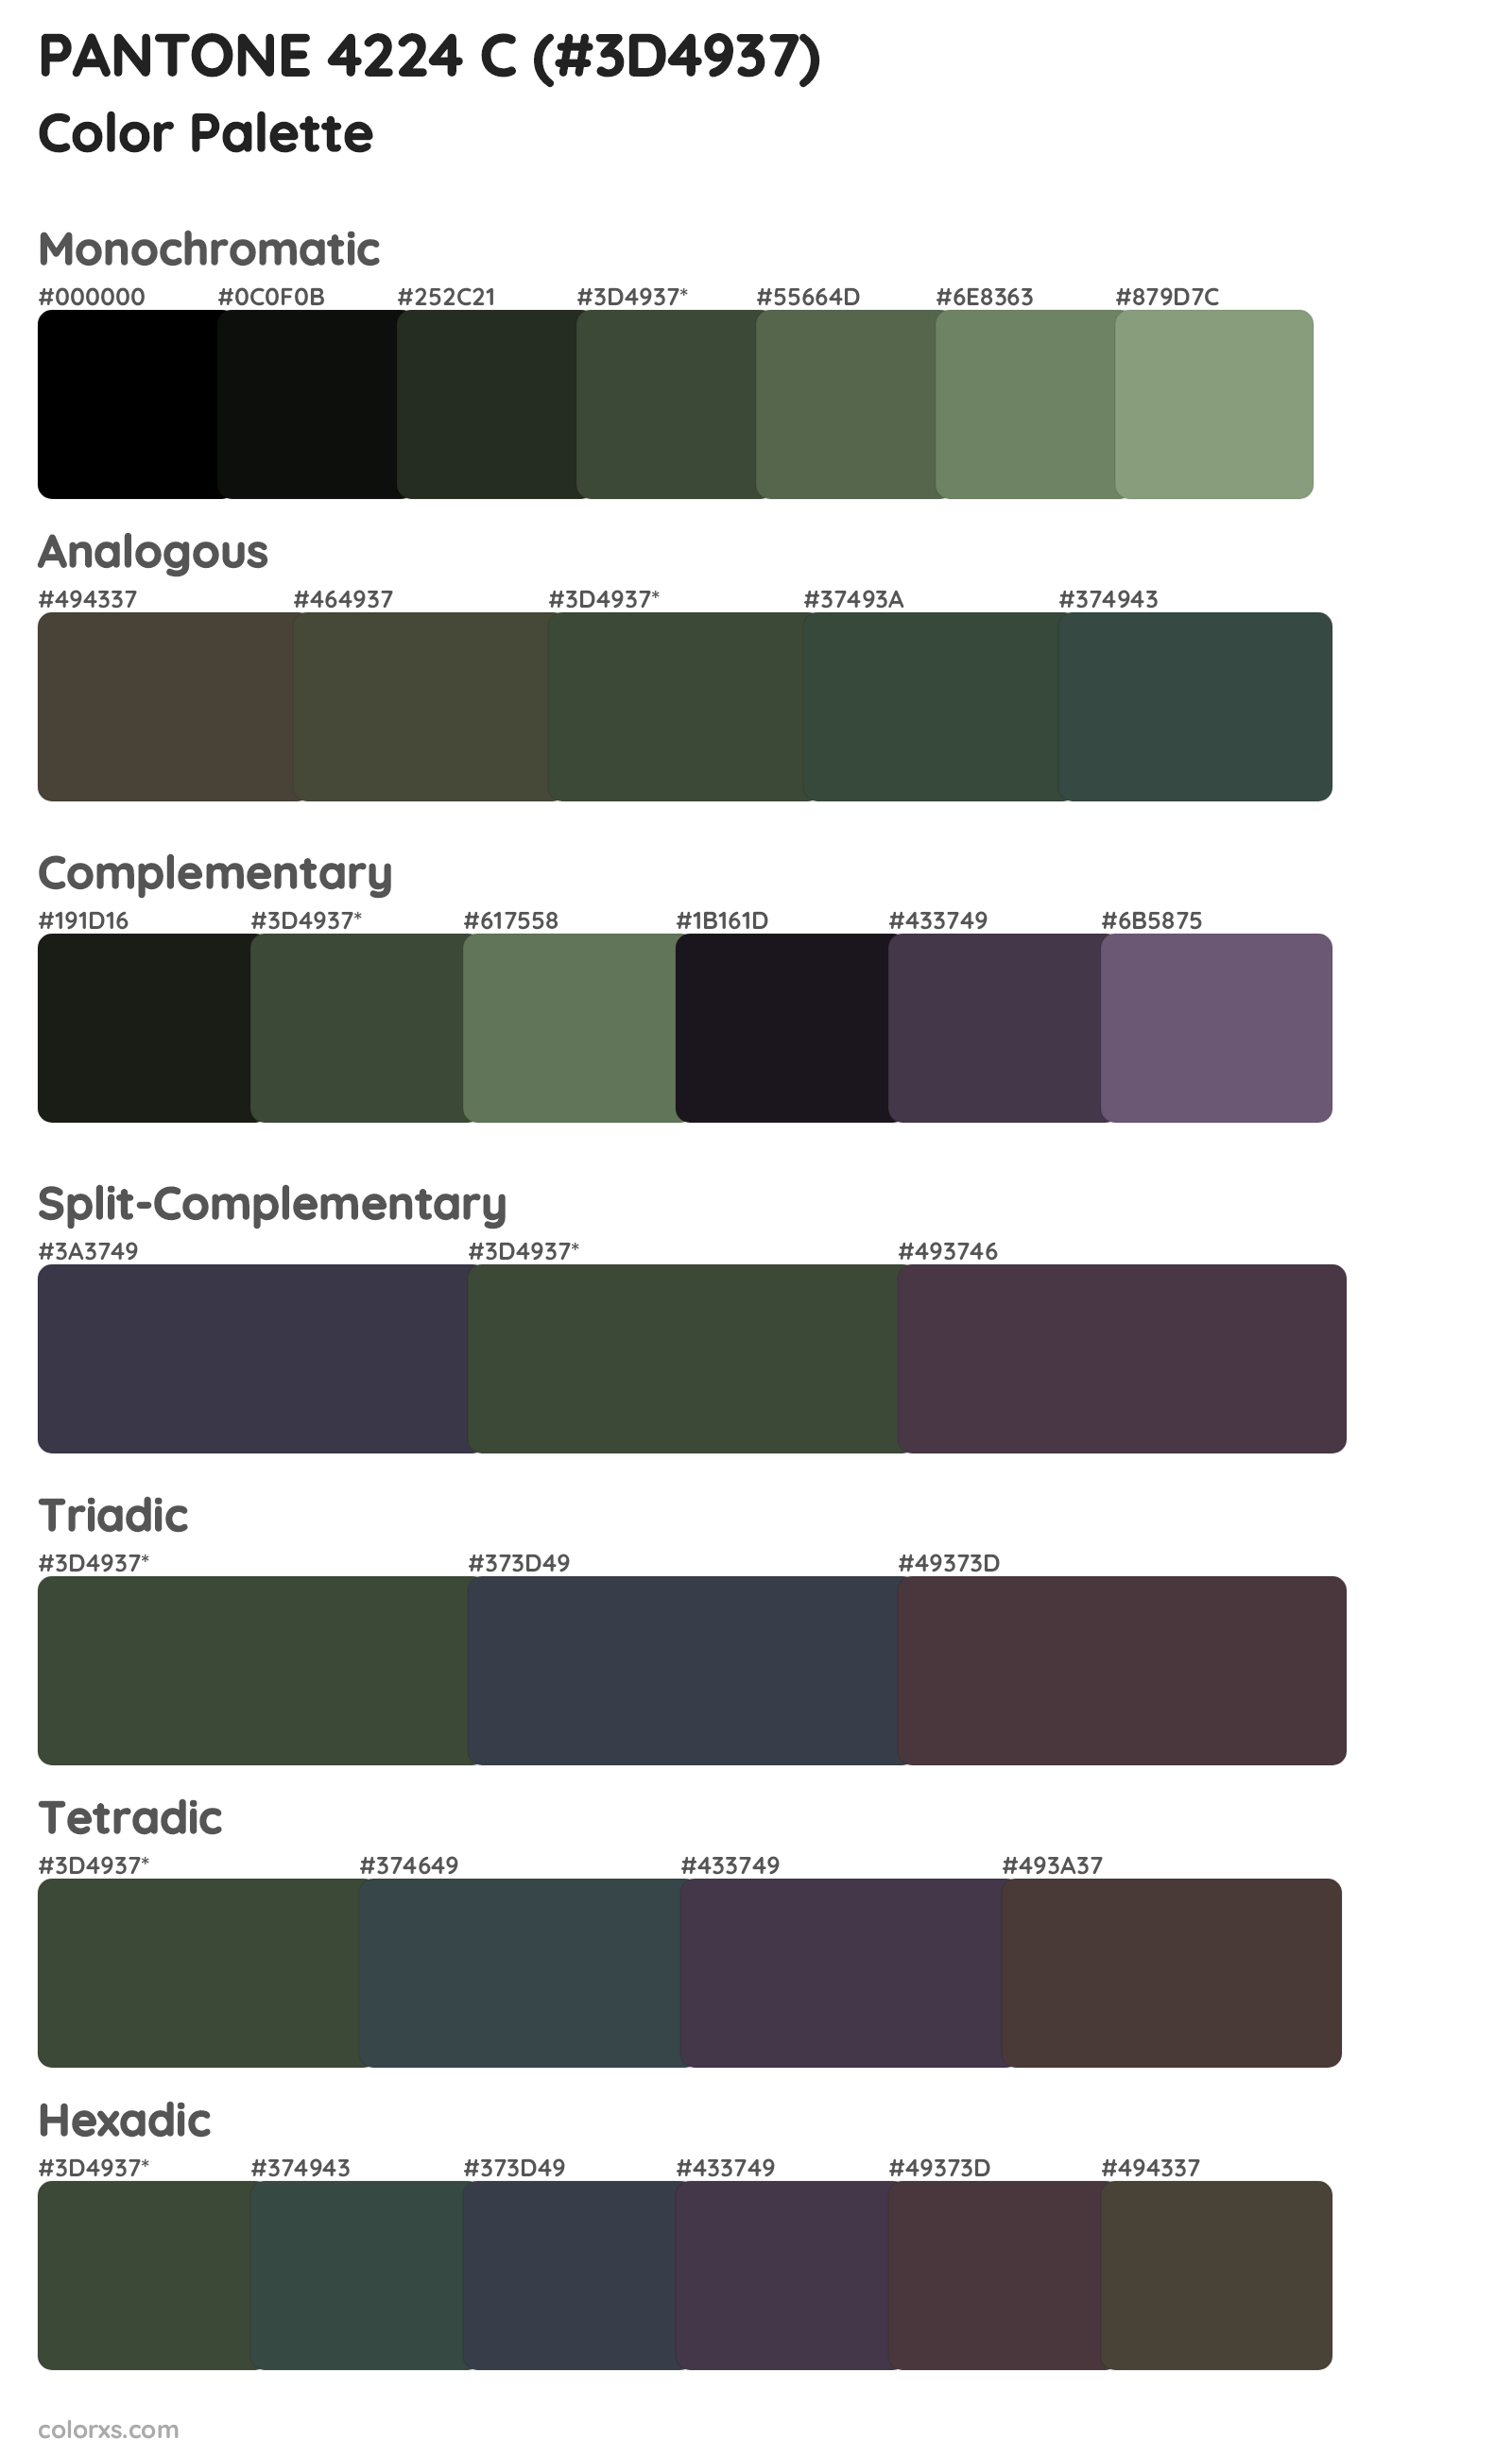 PANTONE 4224 C Color Scheme Palettes